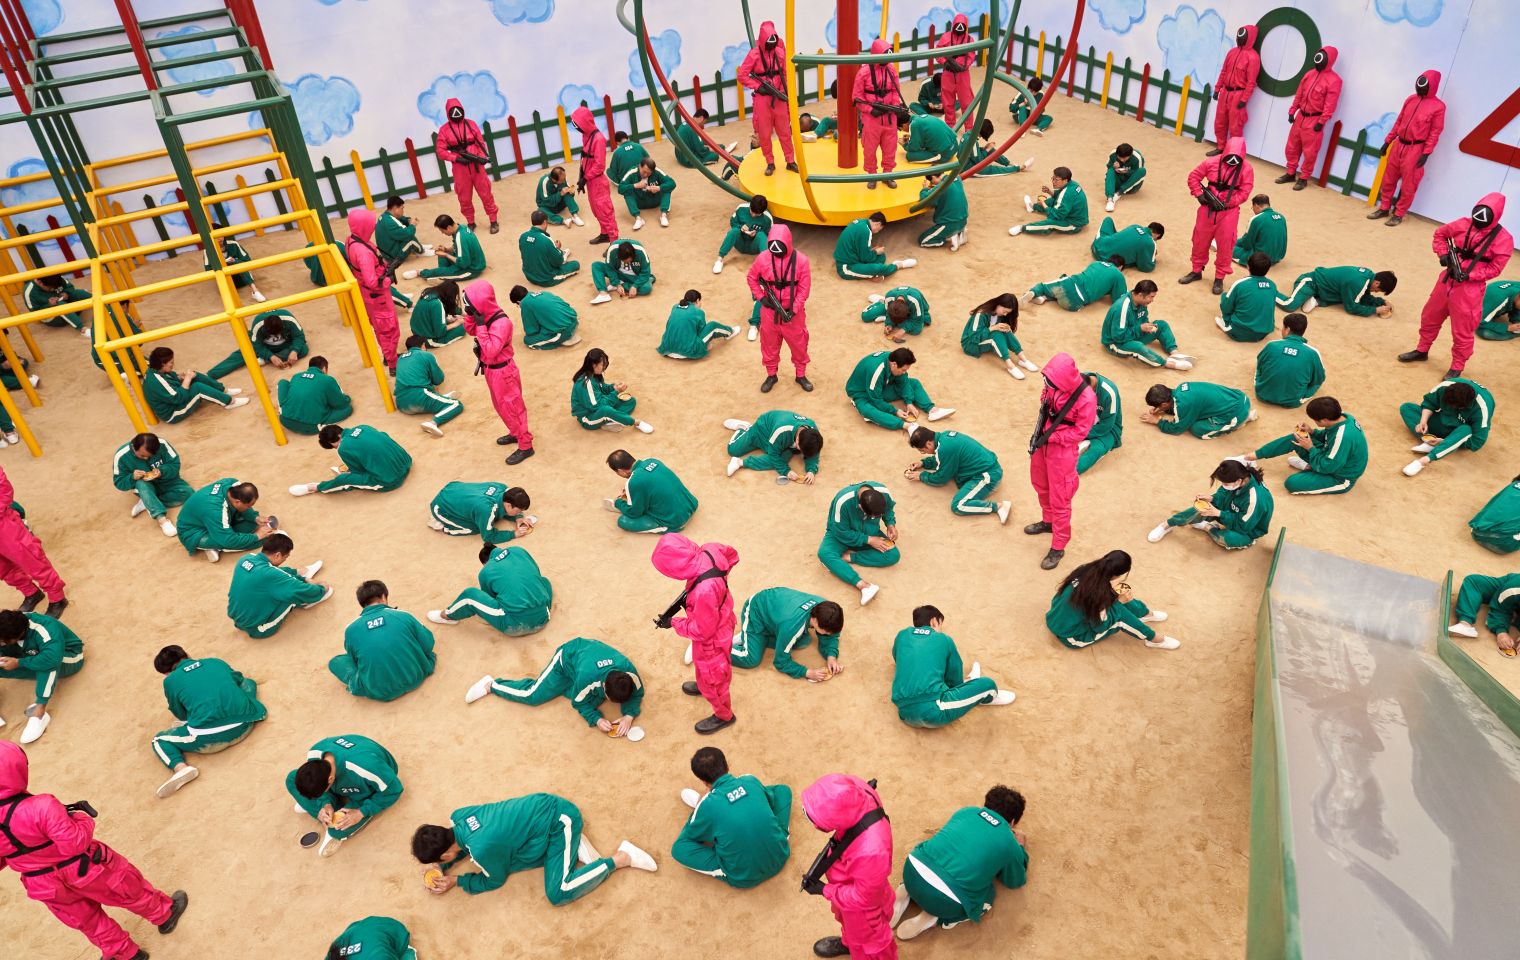 Personajes durante un juego en un salón que parece jardín de niños